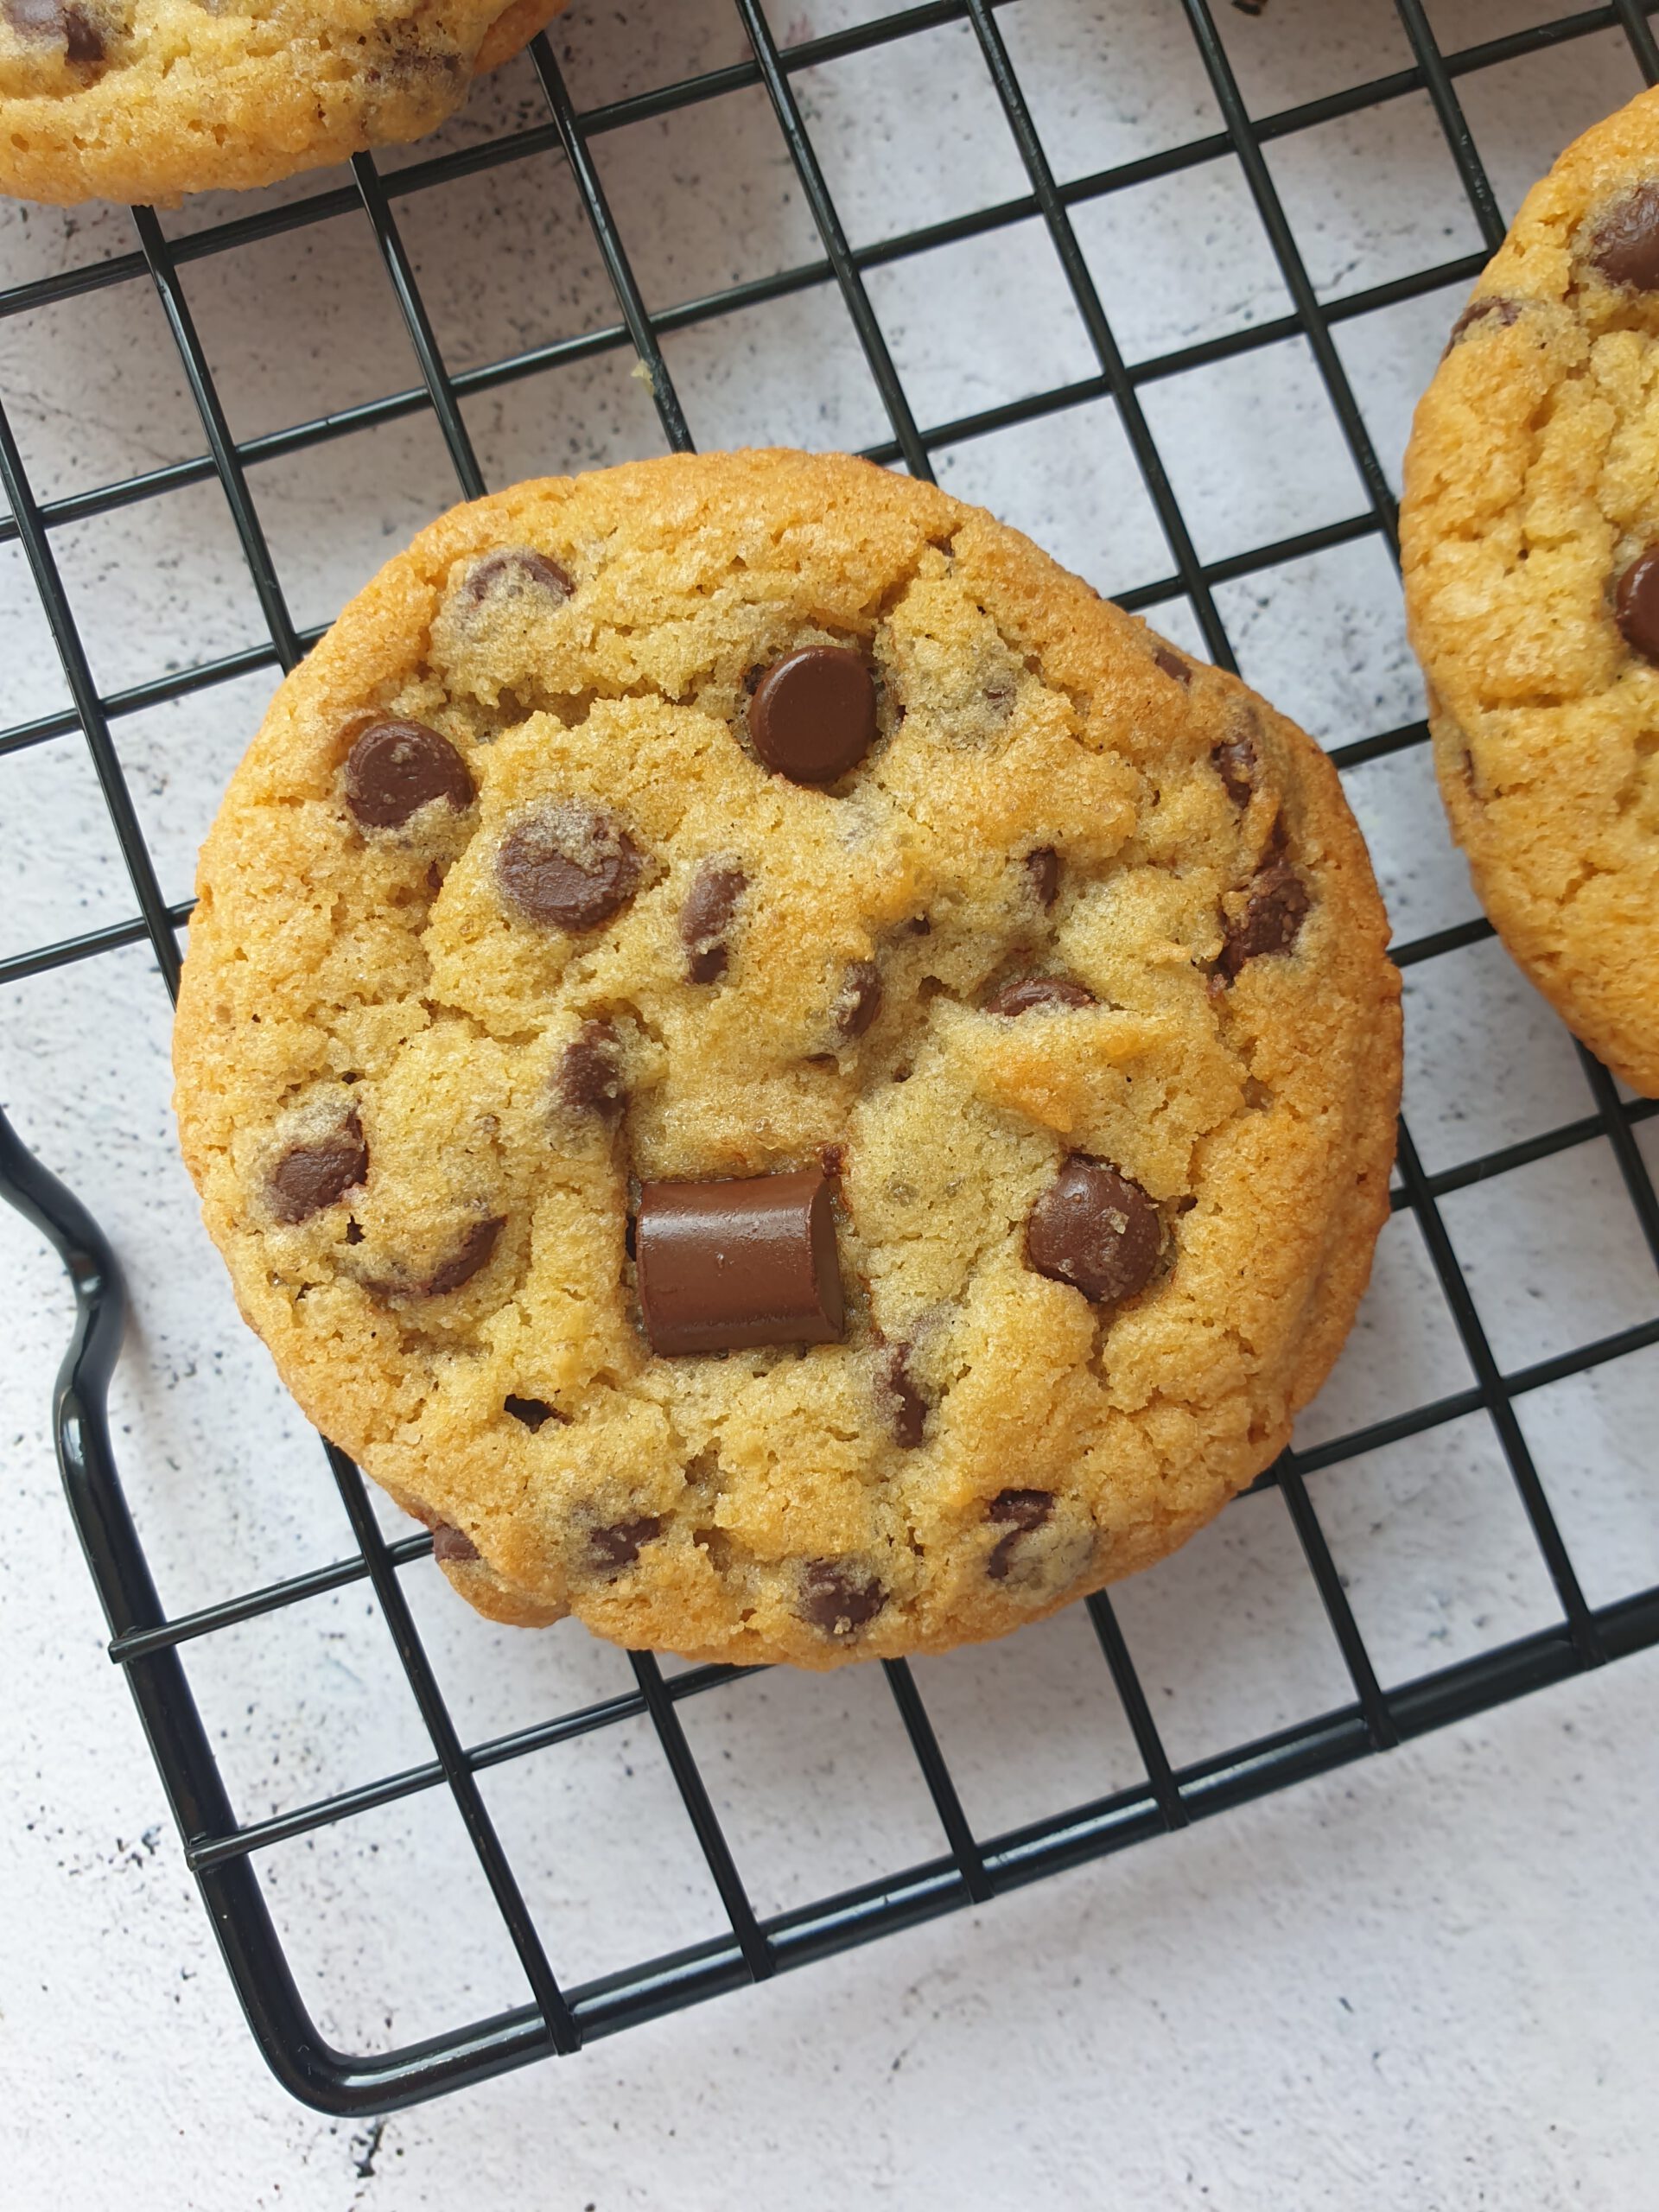 Receta de galletas con chispas de chocolate – Por amor al horno